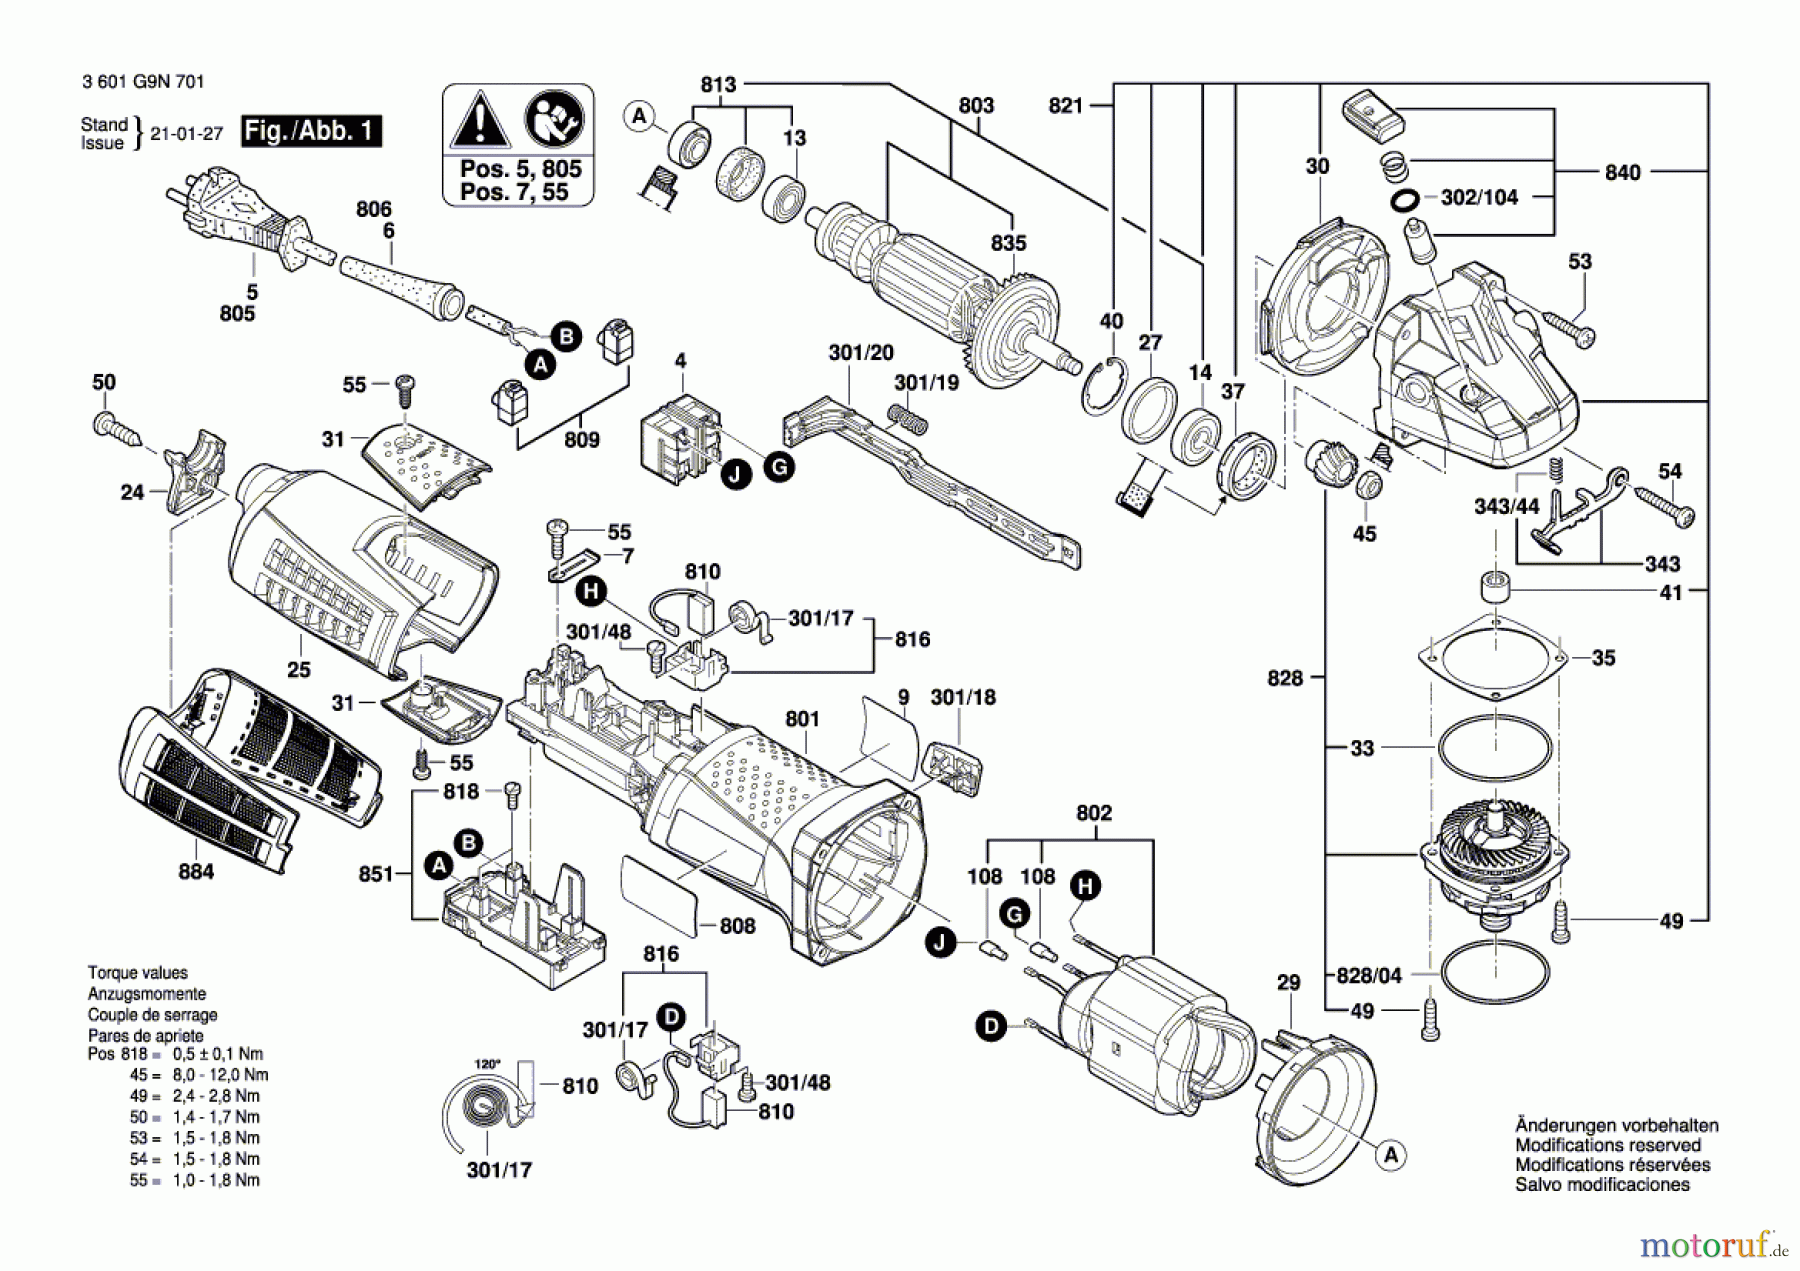  Bosch Werkzeug Winkelschleifer GWS19 CI 115mm (3M) Seite 1